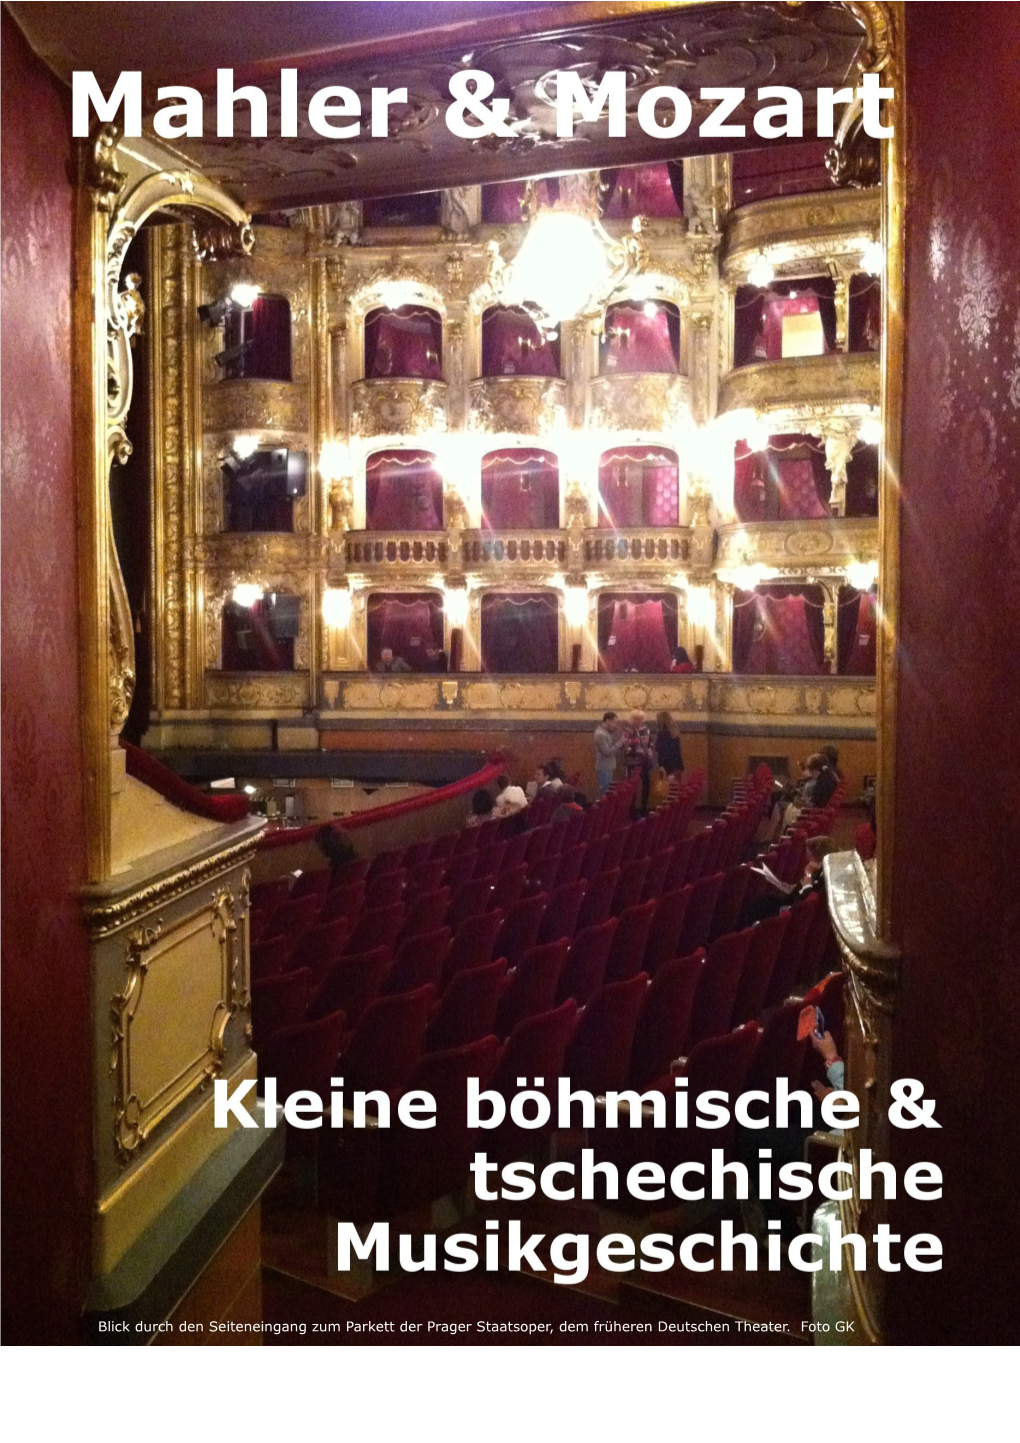 Blick Durch Den Seiteneingang Zum Parkett Der Prager Staatsoper, Dem Früheren Deutschen Theater. Foto GK Mahler & Mozart